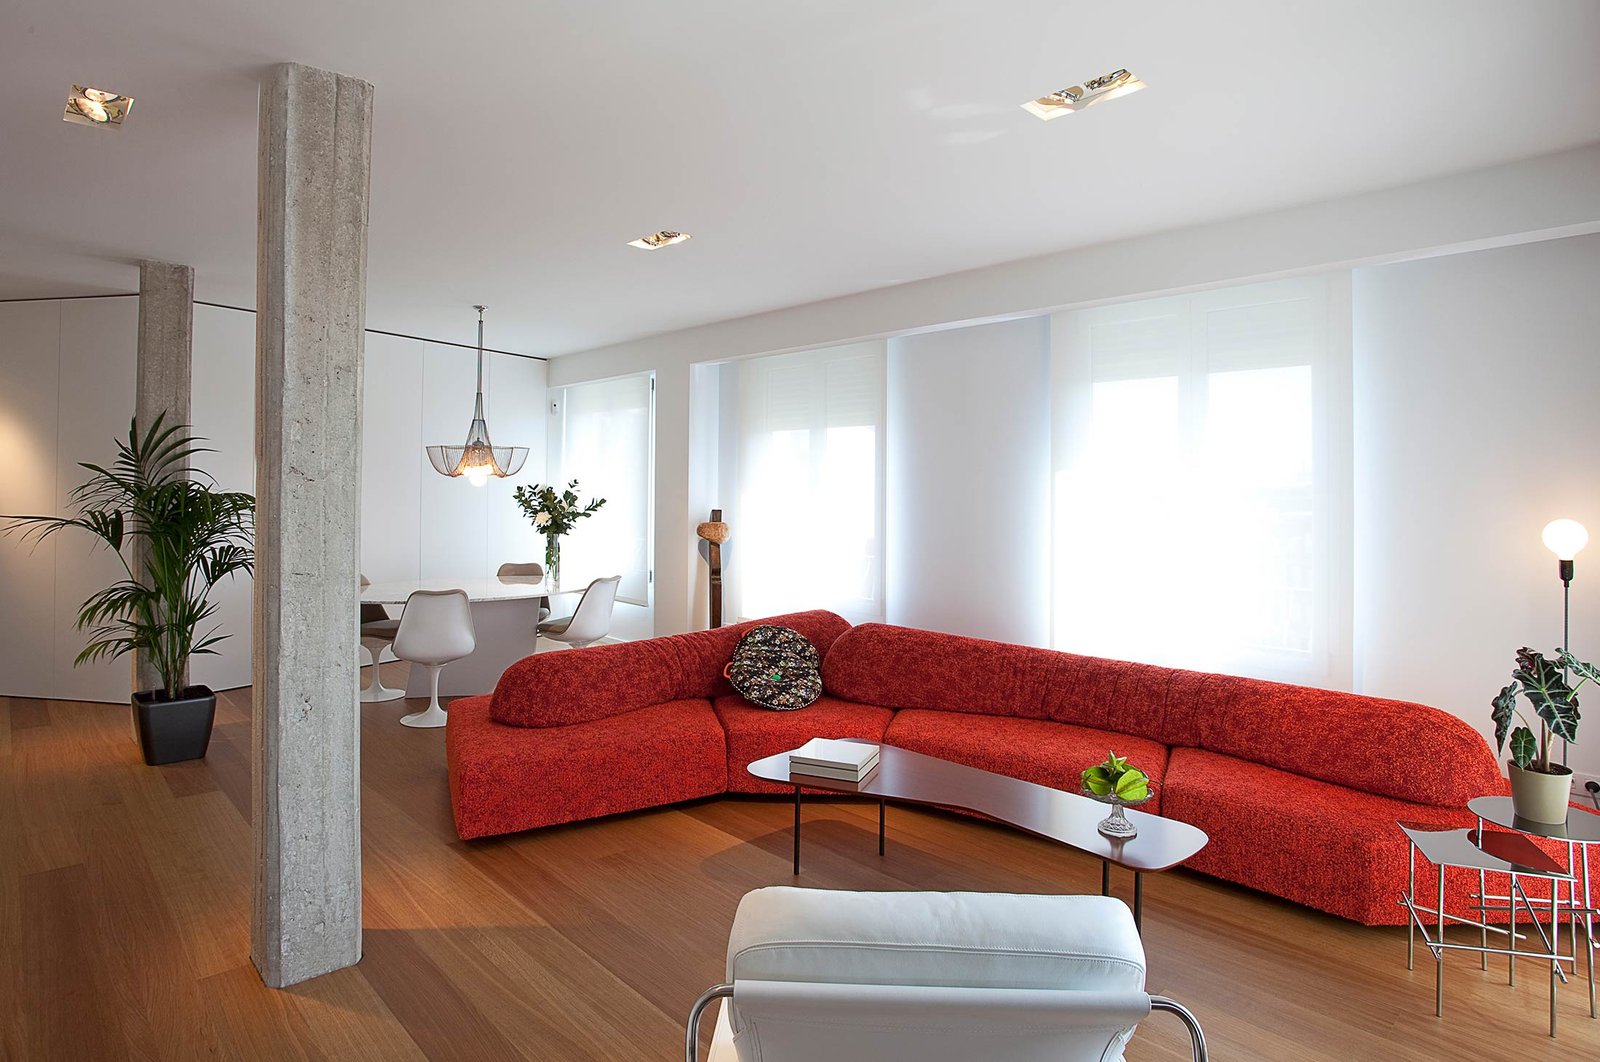 Decoración comedor Madrid amplio apartamento moderno con gran sofá rojo suelo parquet y pilares hormigón